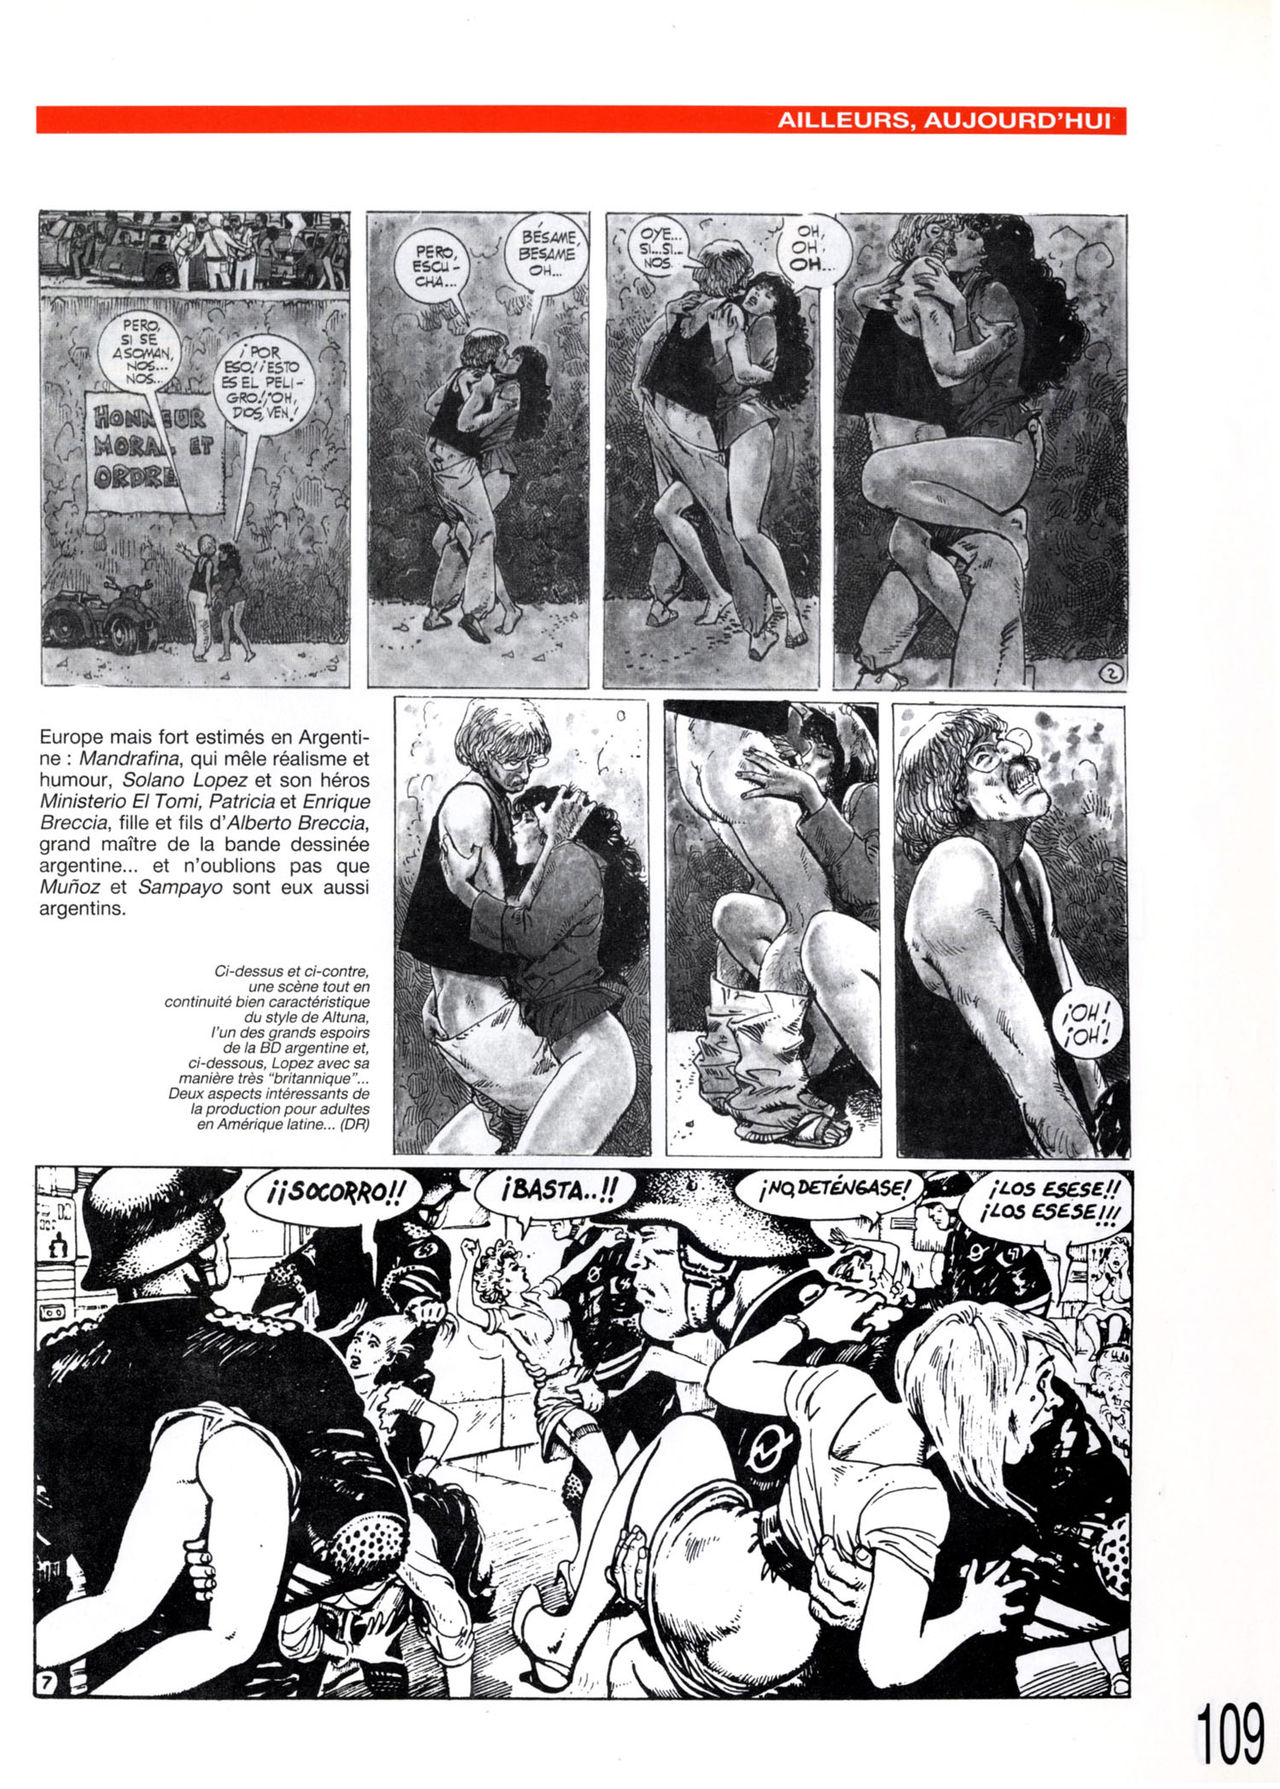 Petite histoire de lérotisme dans la BD - Volume 1 numero d'image 94